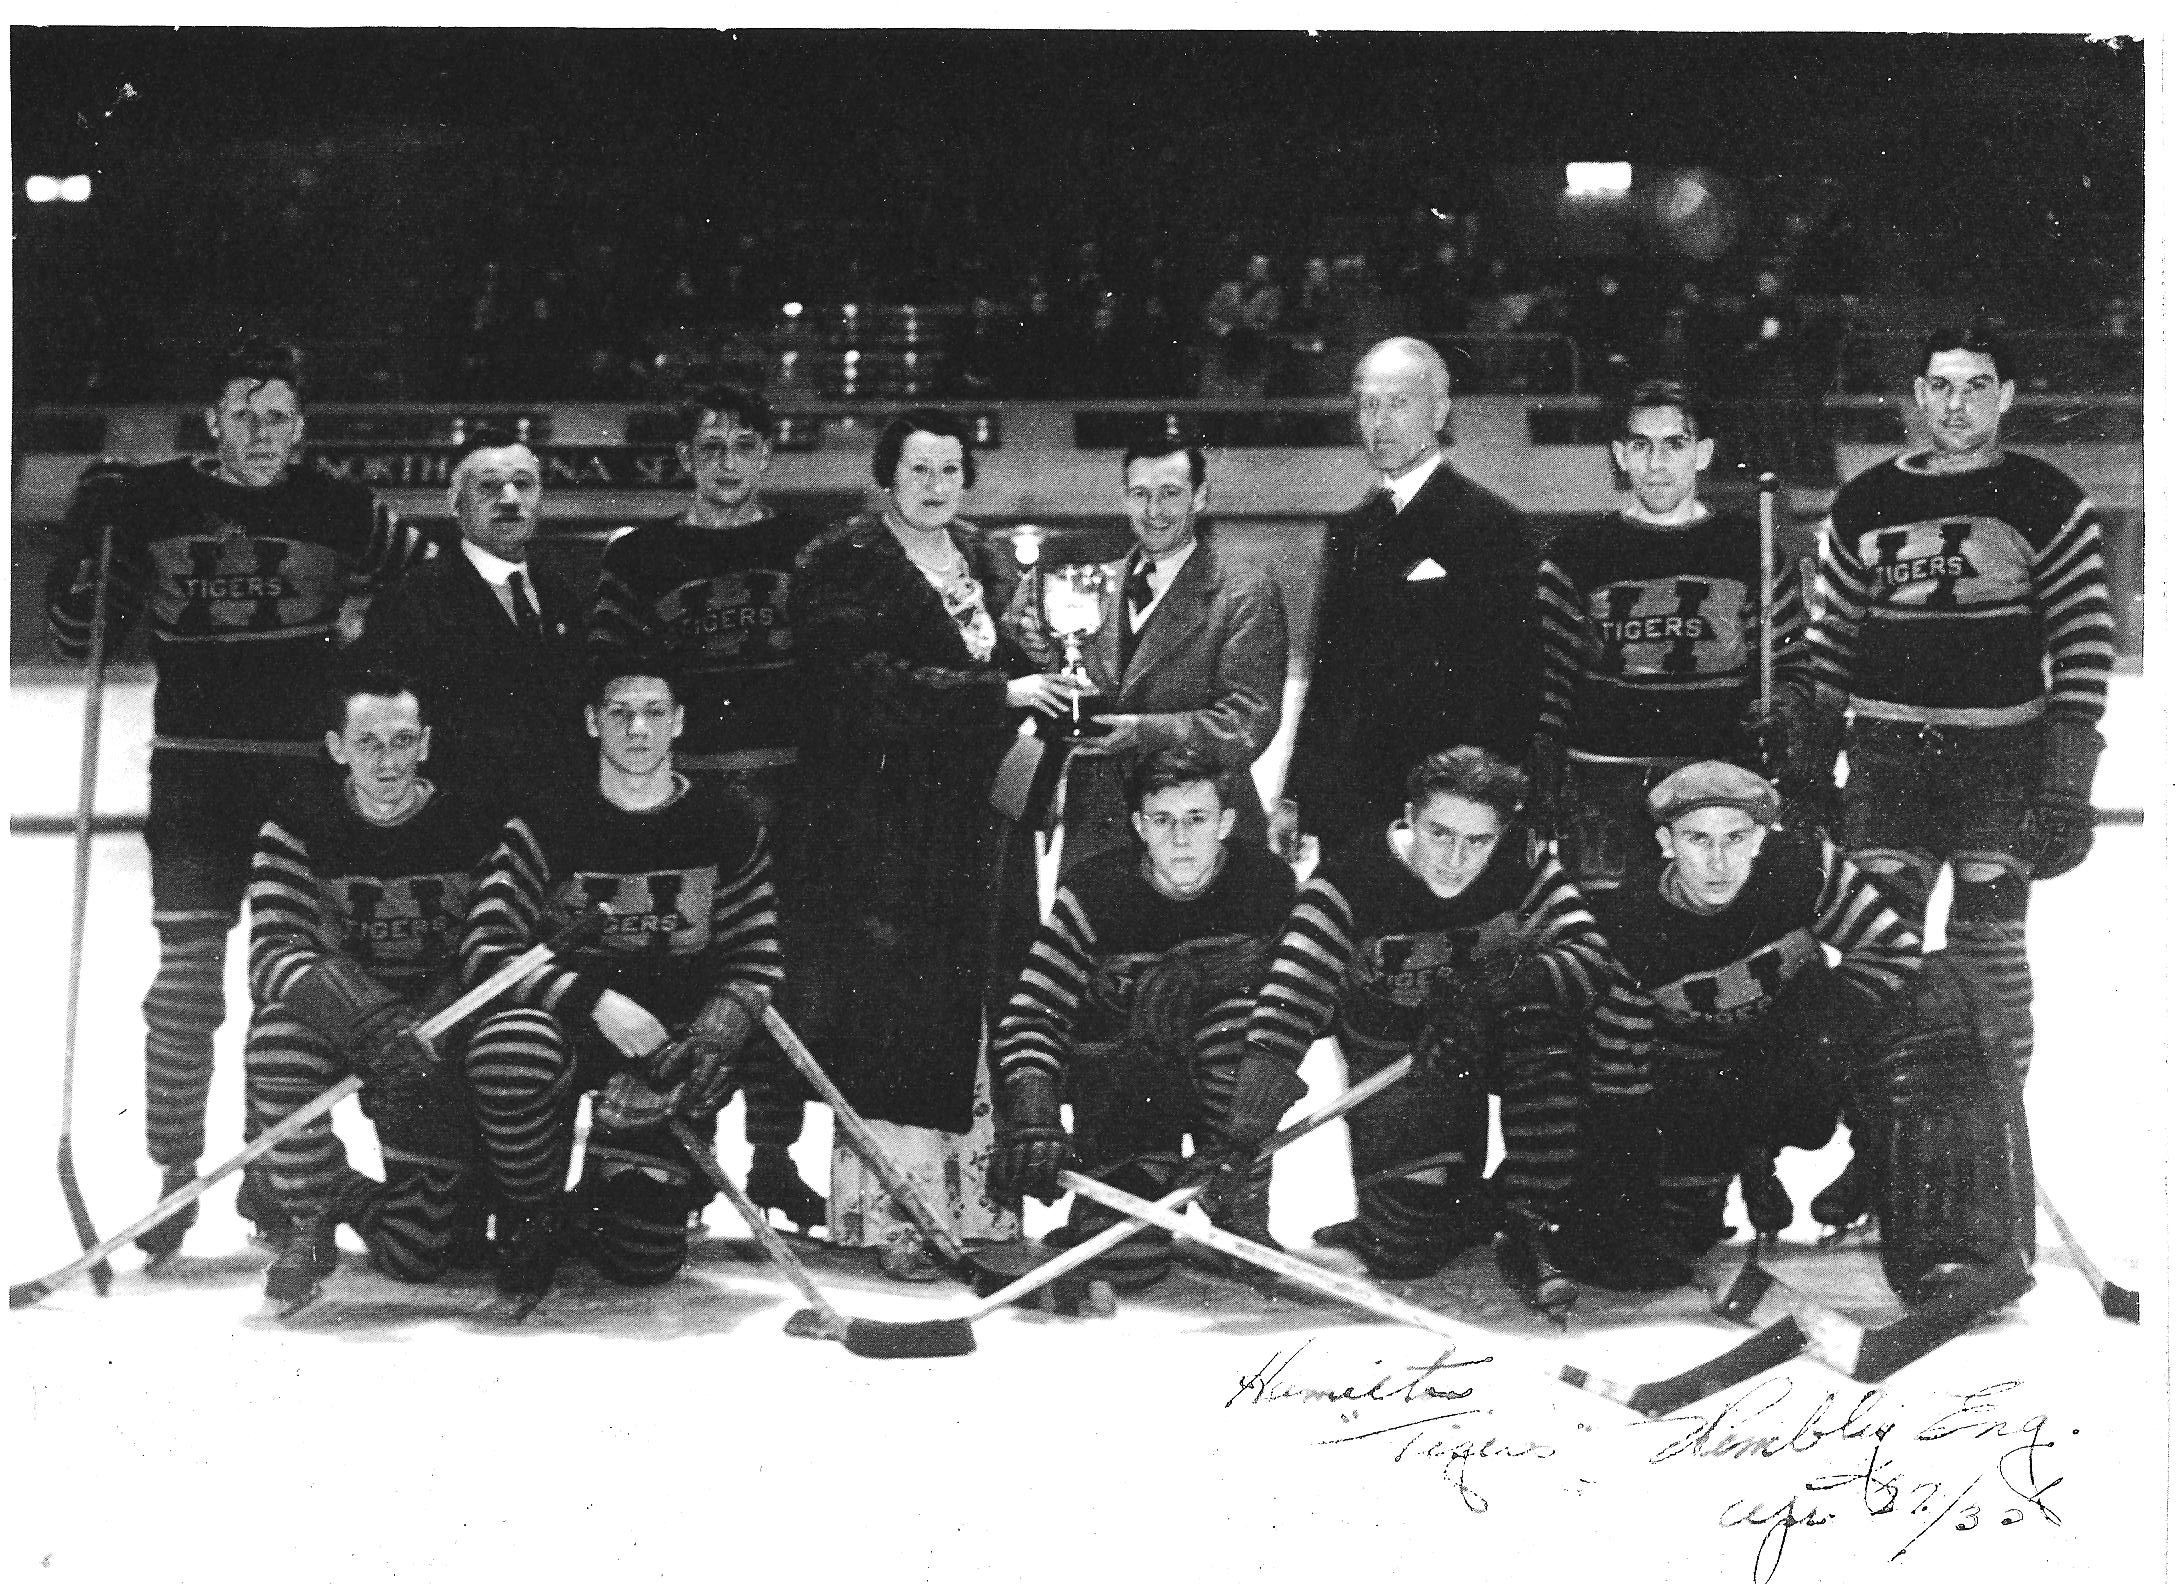 1935 Hamilton Tigers hockey team